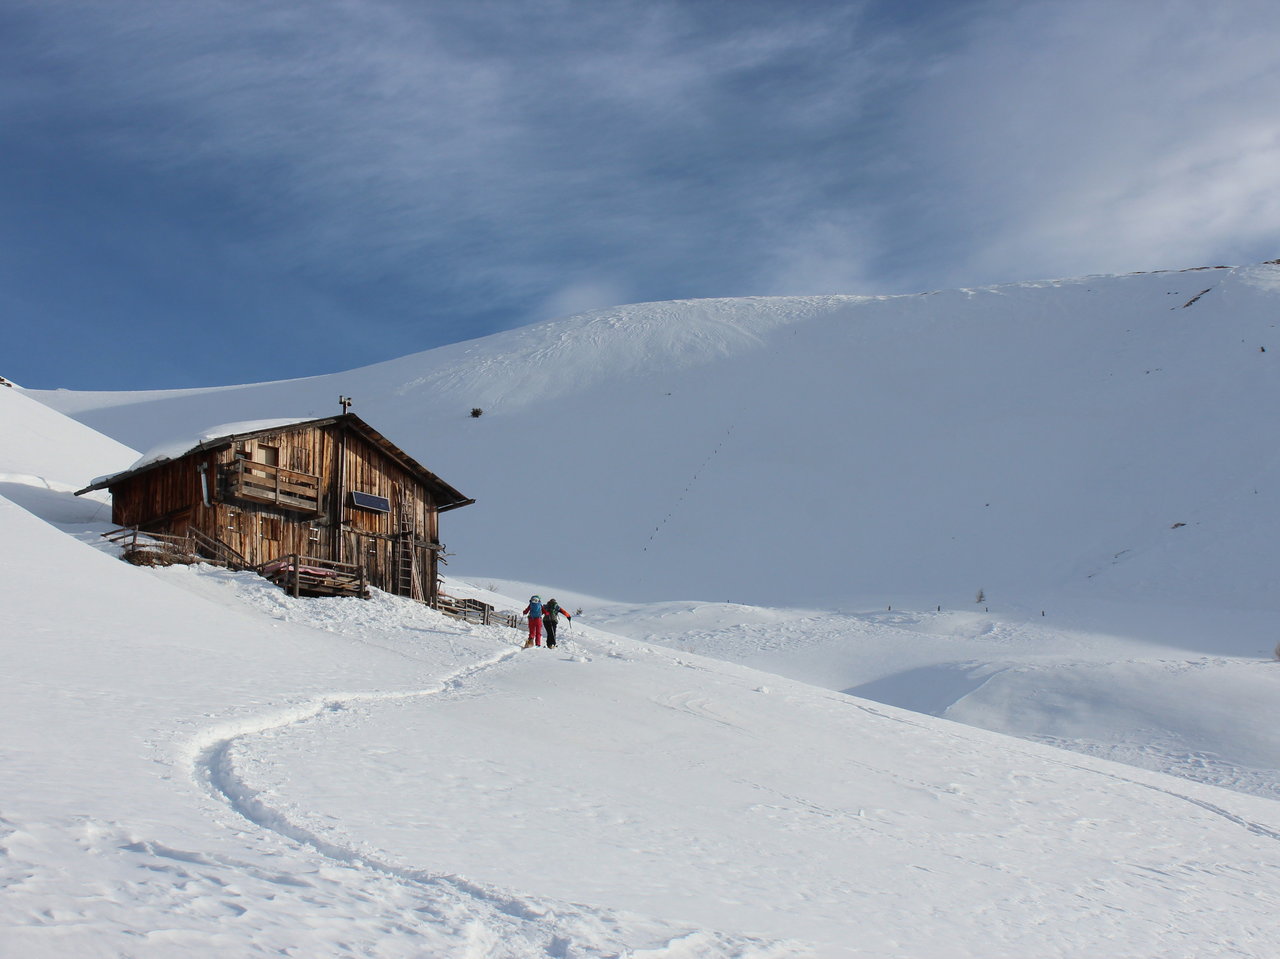 Ski tour Passeiertal Valley South Tirol Italy